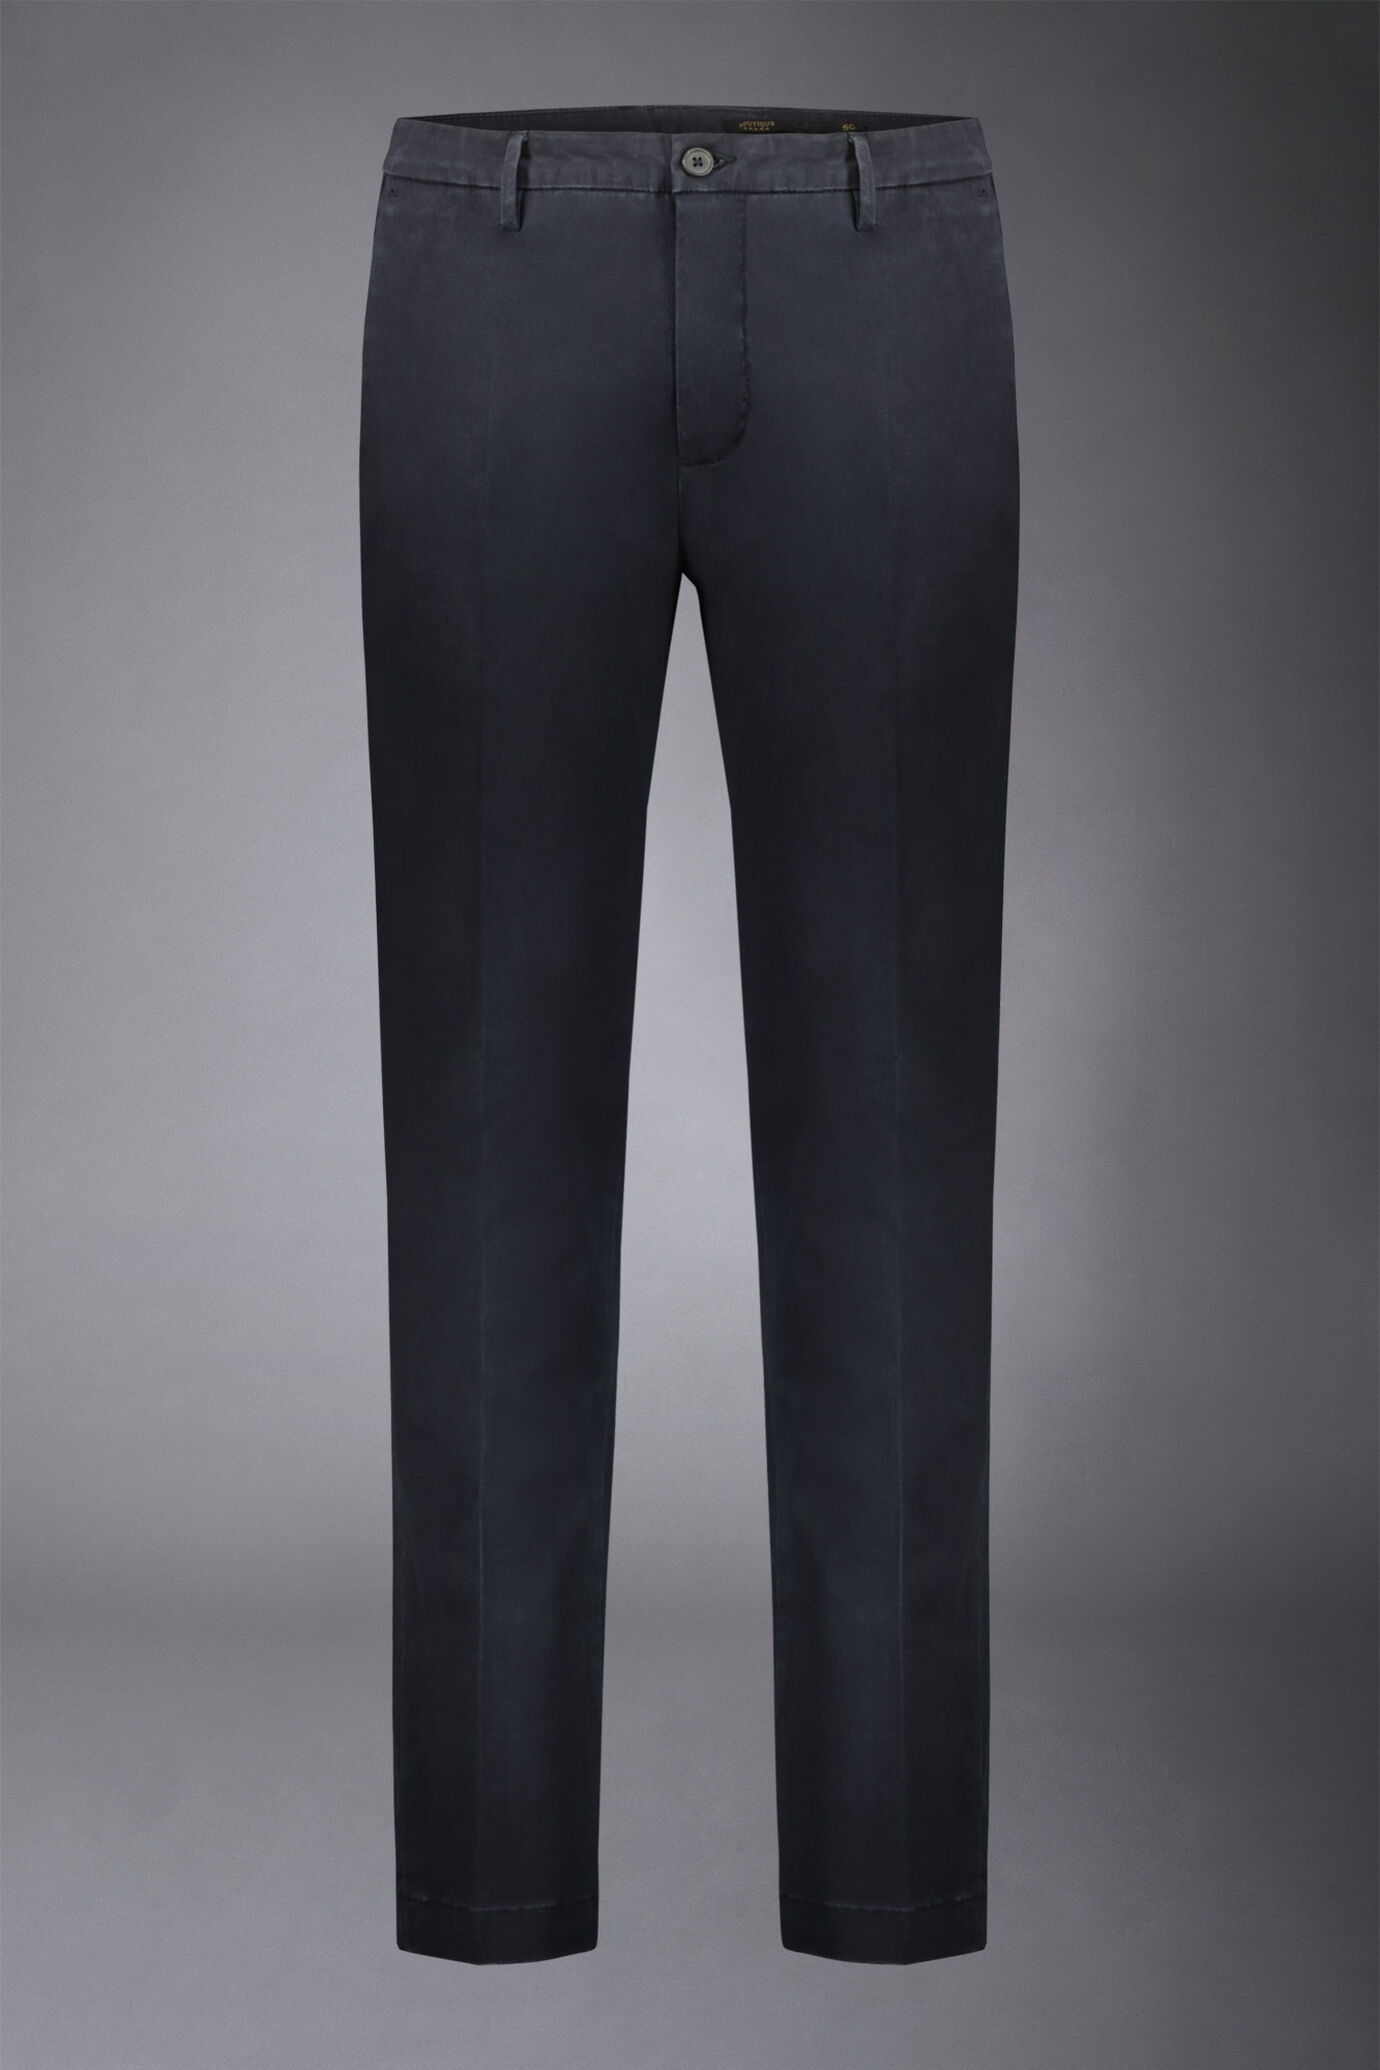 Pantalone chino uomo classico regular fit tessuto twill elasticizzato image number 0